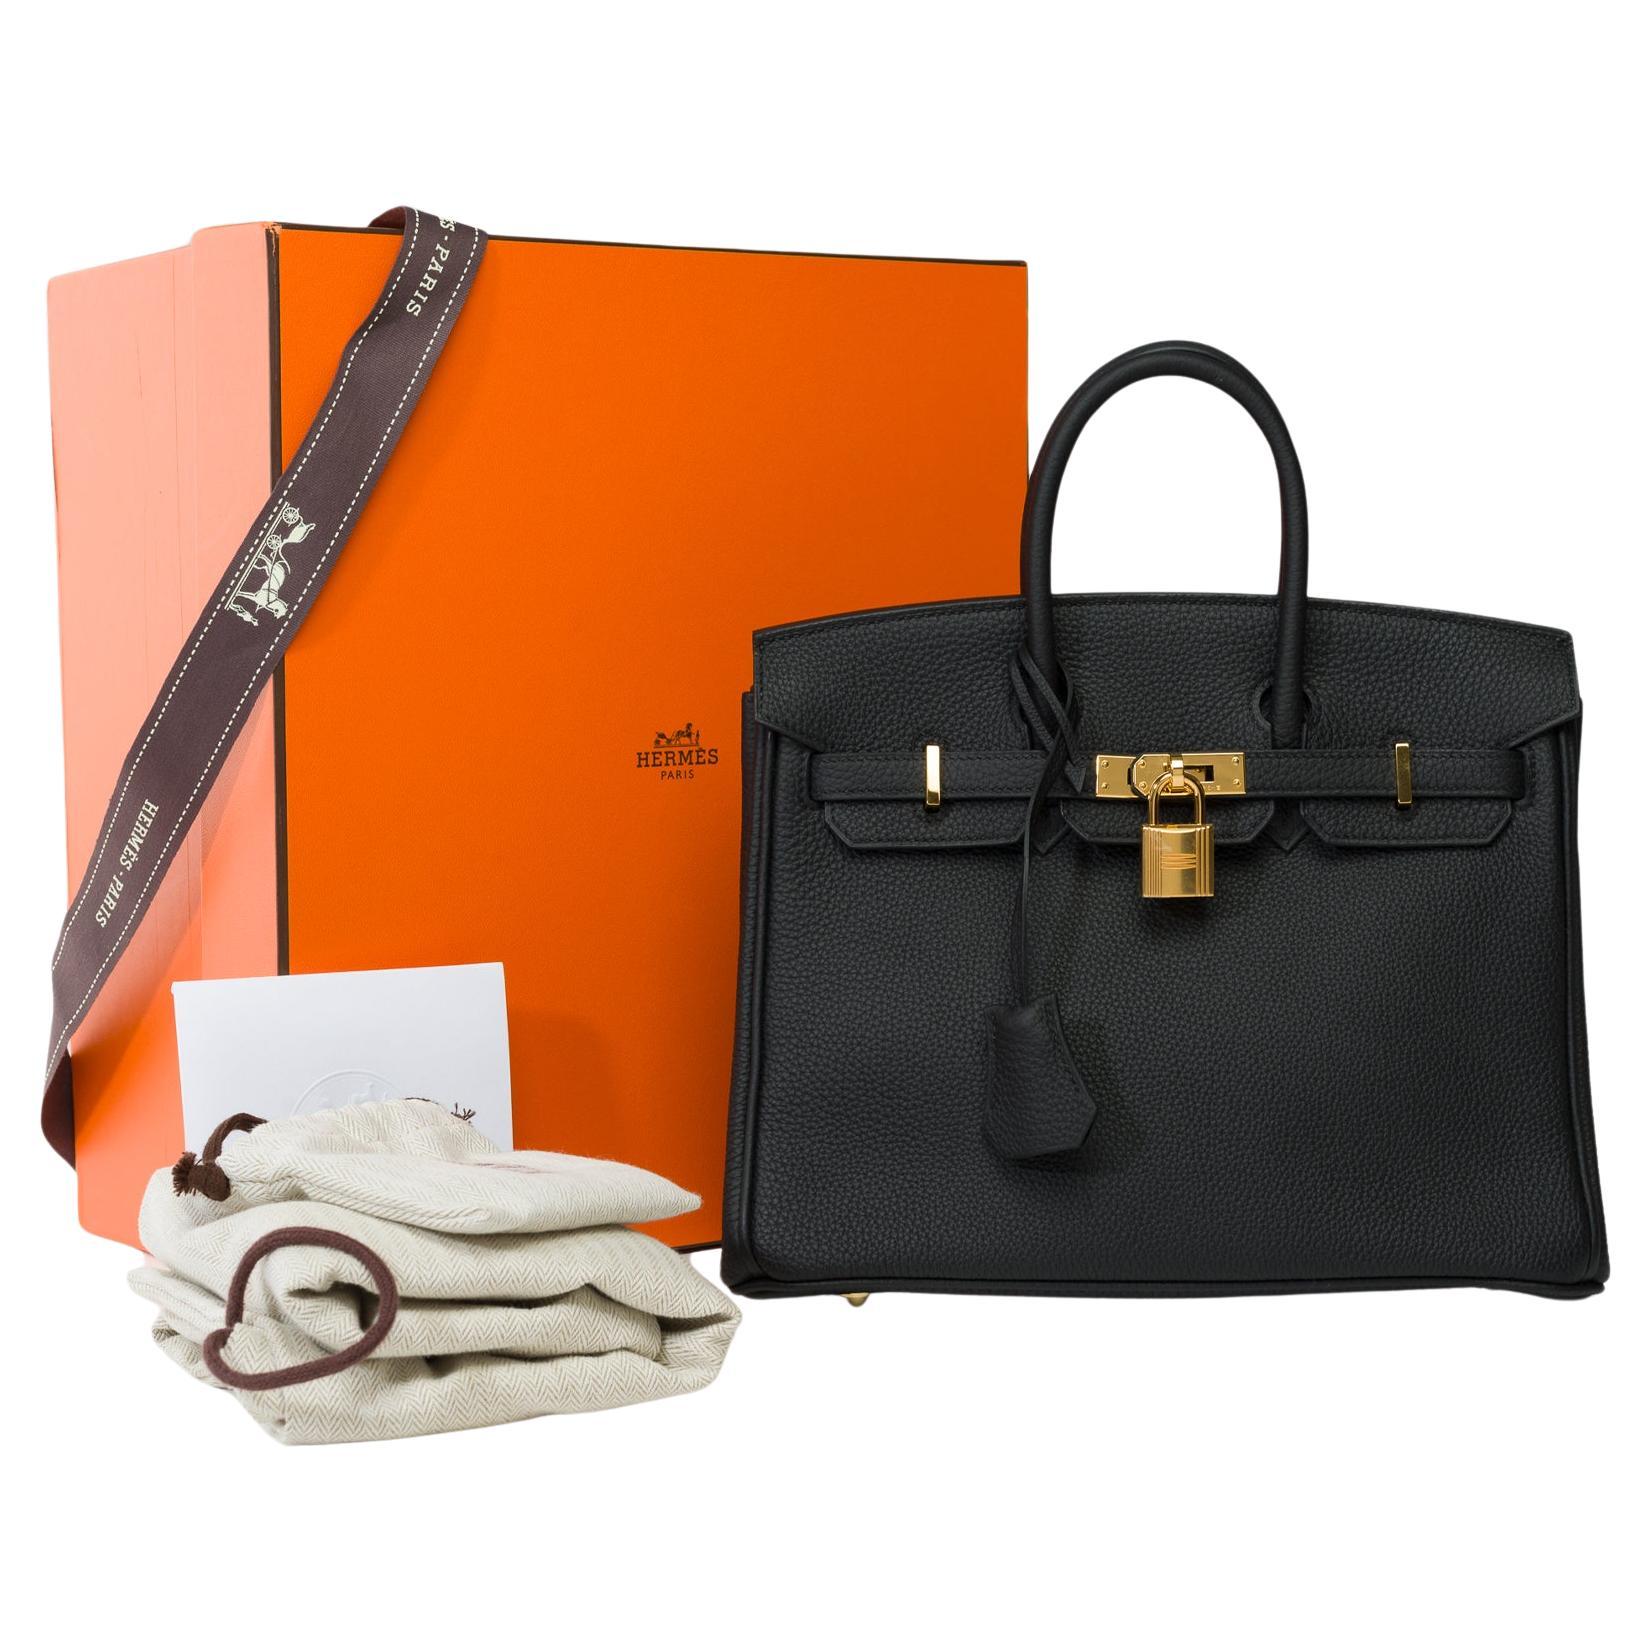 Amazing Hermes Birkin 25 handbag inBlack Togo leather, GHW For Sale